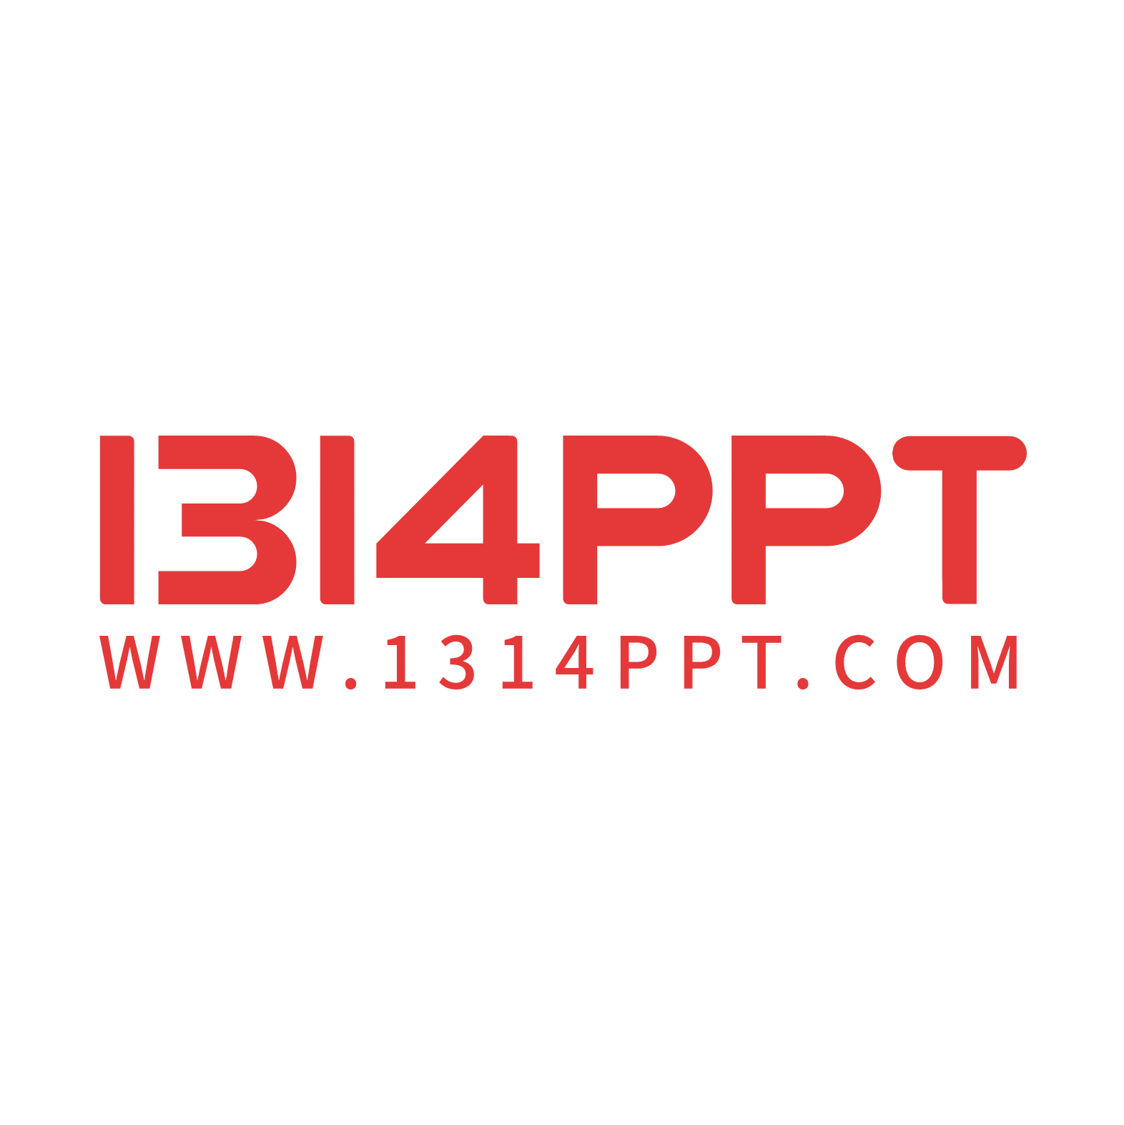 PPT模板免费下载素材 - 1314PPT_一家专注高端PPT模板下载的网站